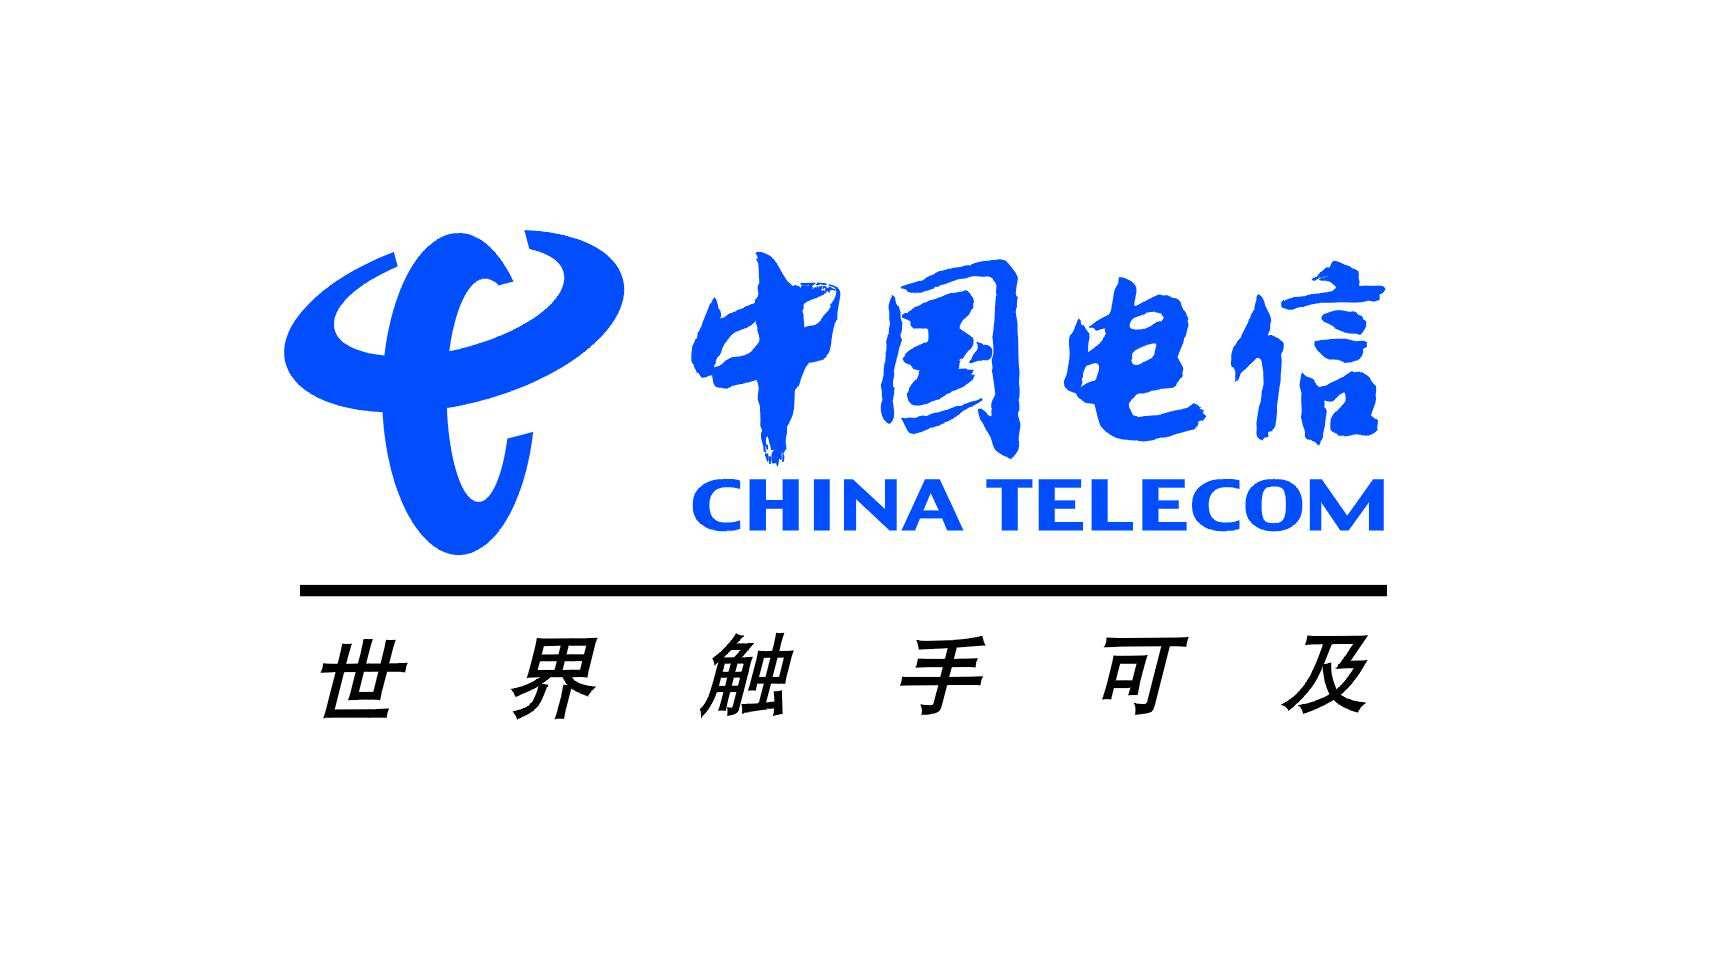 中国电信标志 - 原创字体设计网